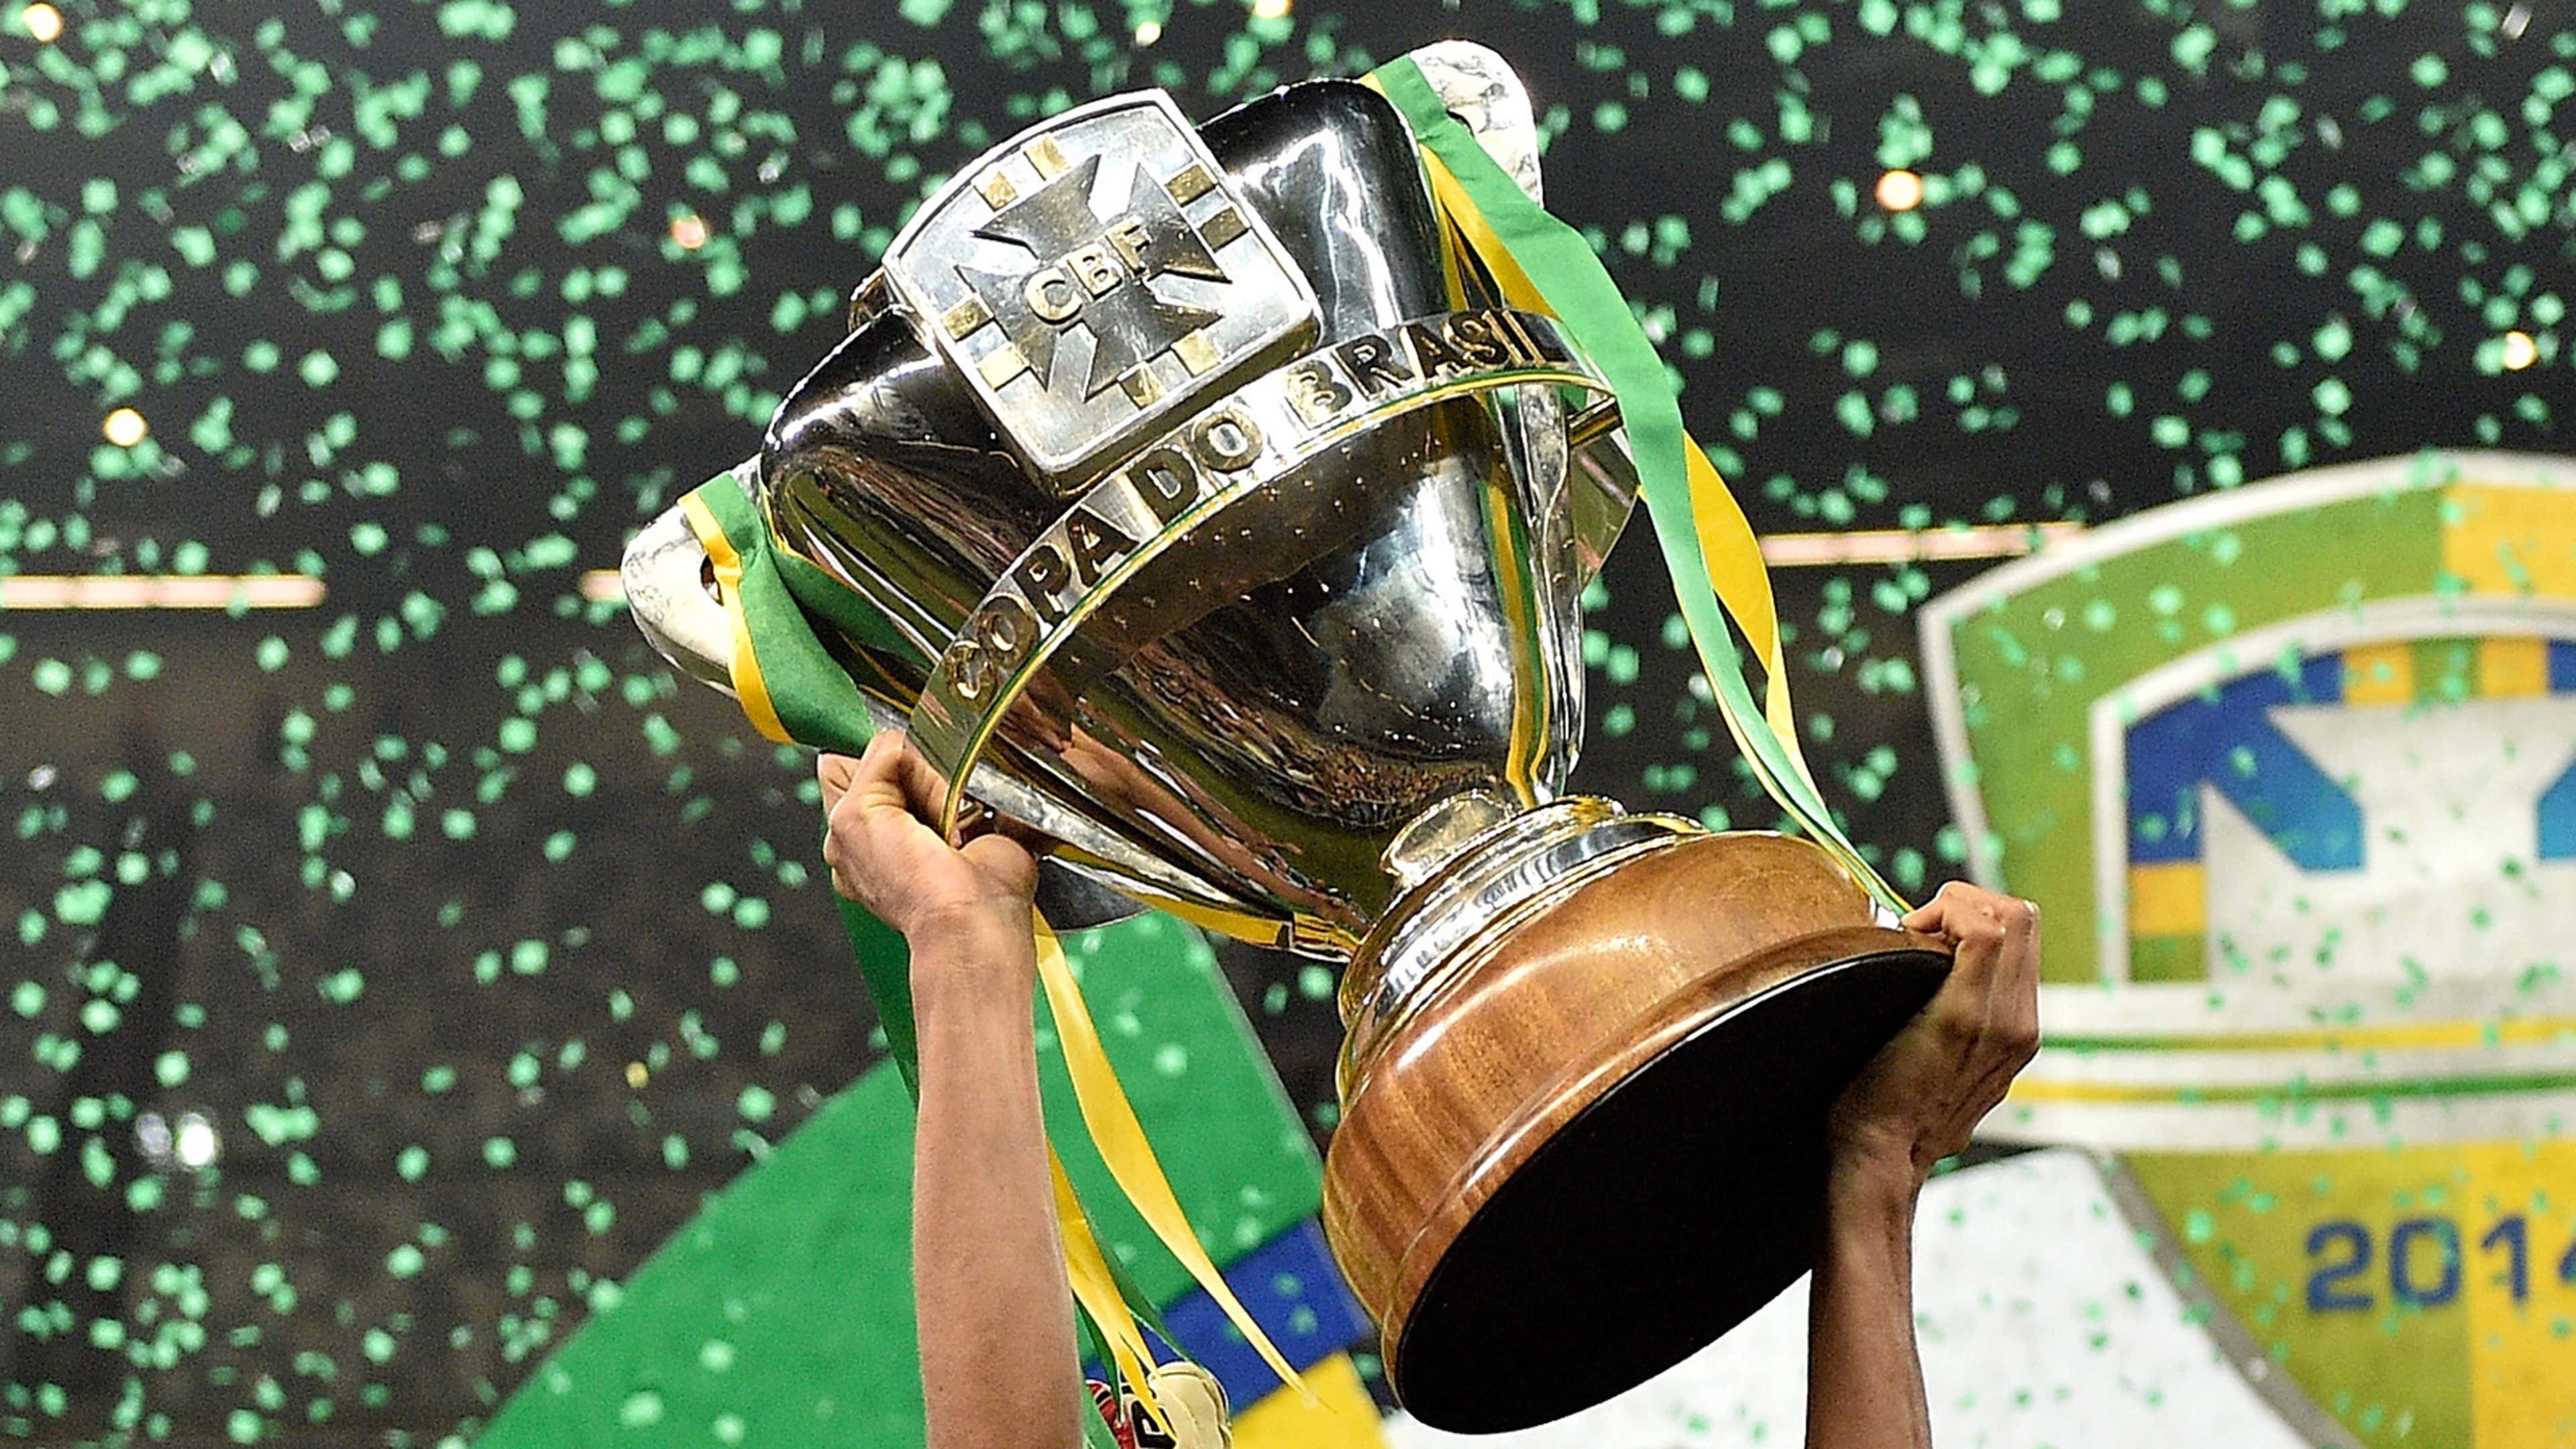 Copa do Brasil: quem chegou mais vezes nas quartas de final?